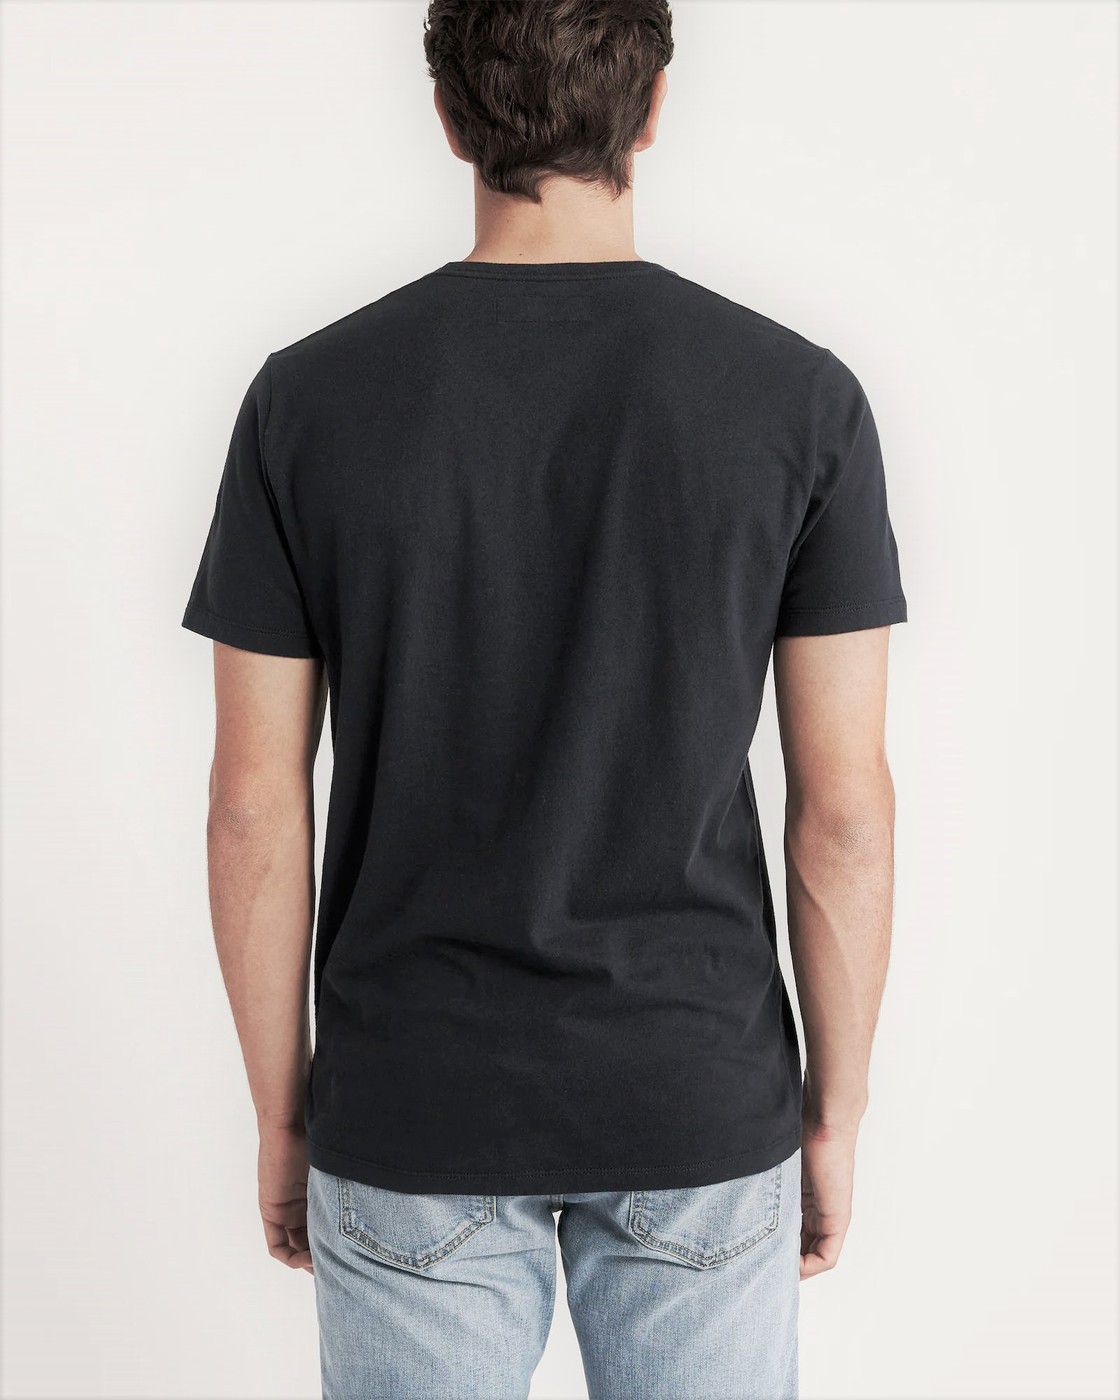 Черная футболка - мужская футболка Abercrombie & Fitch, XS, XS